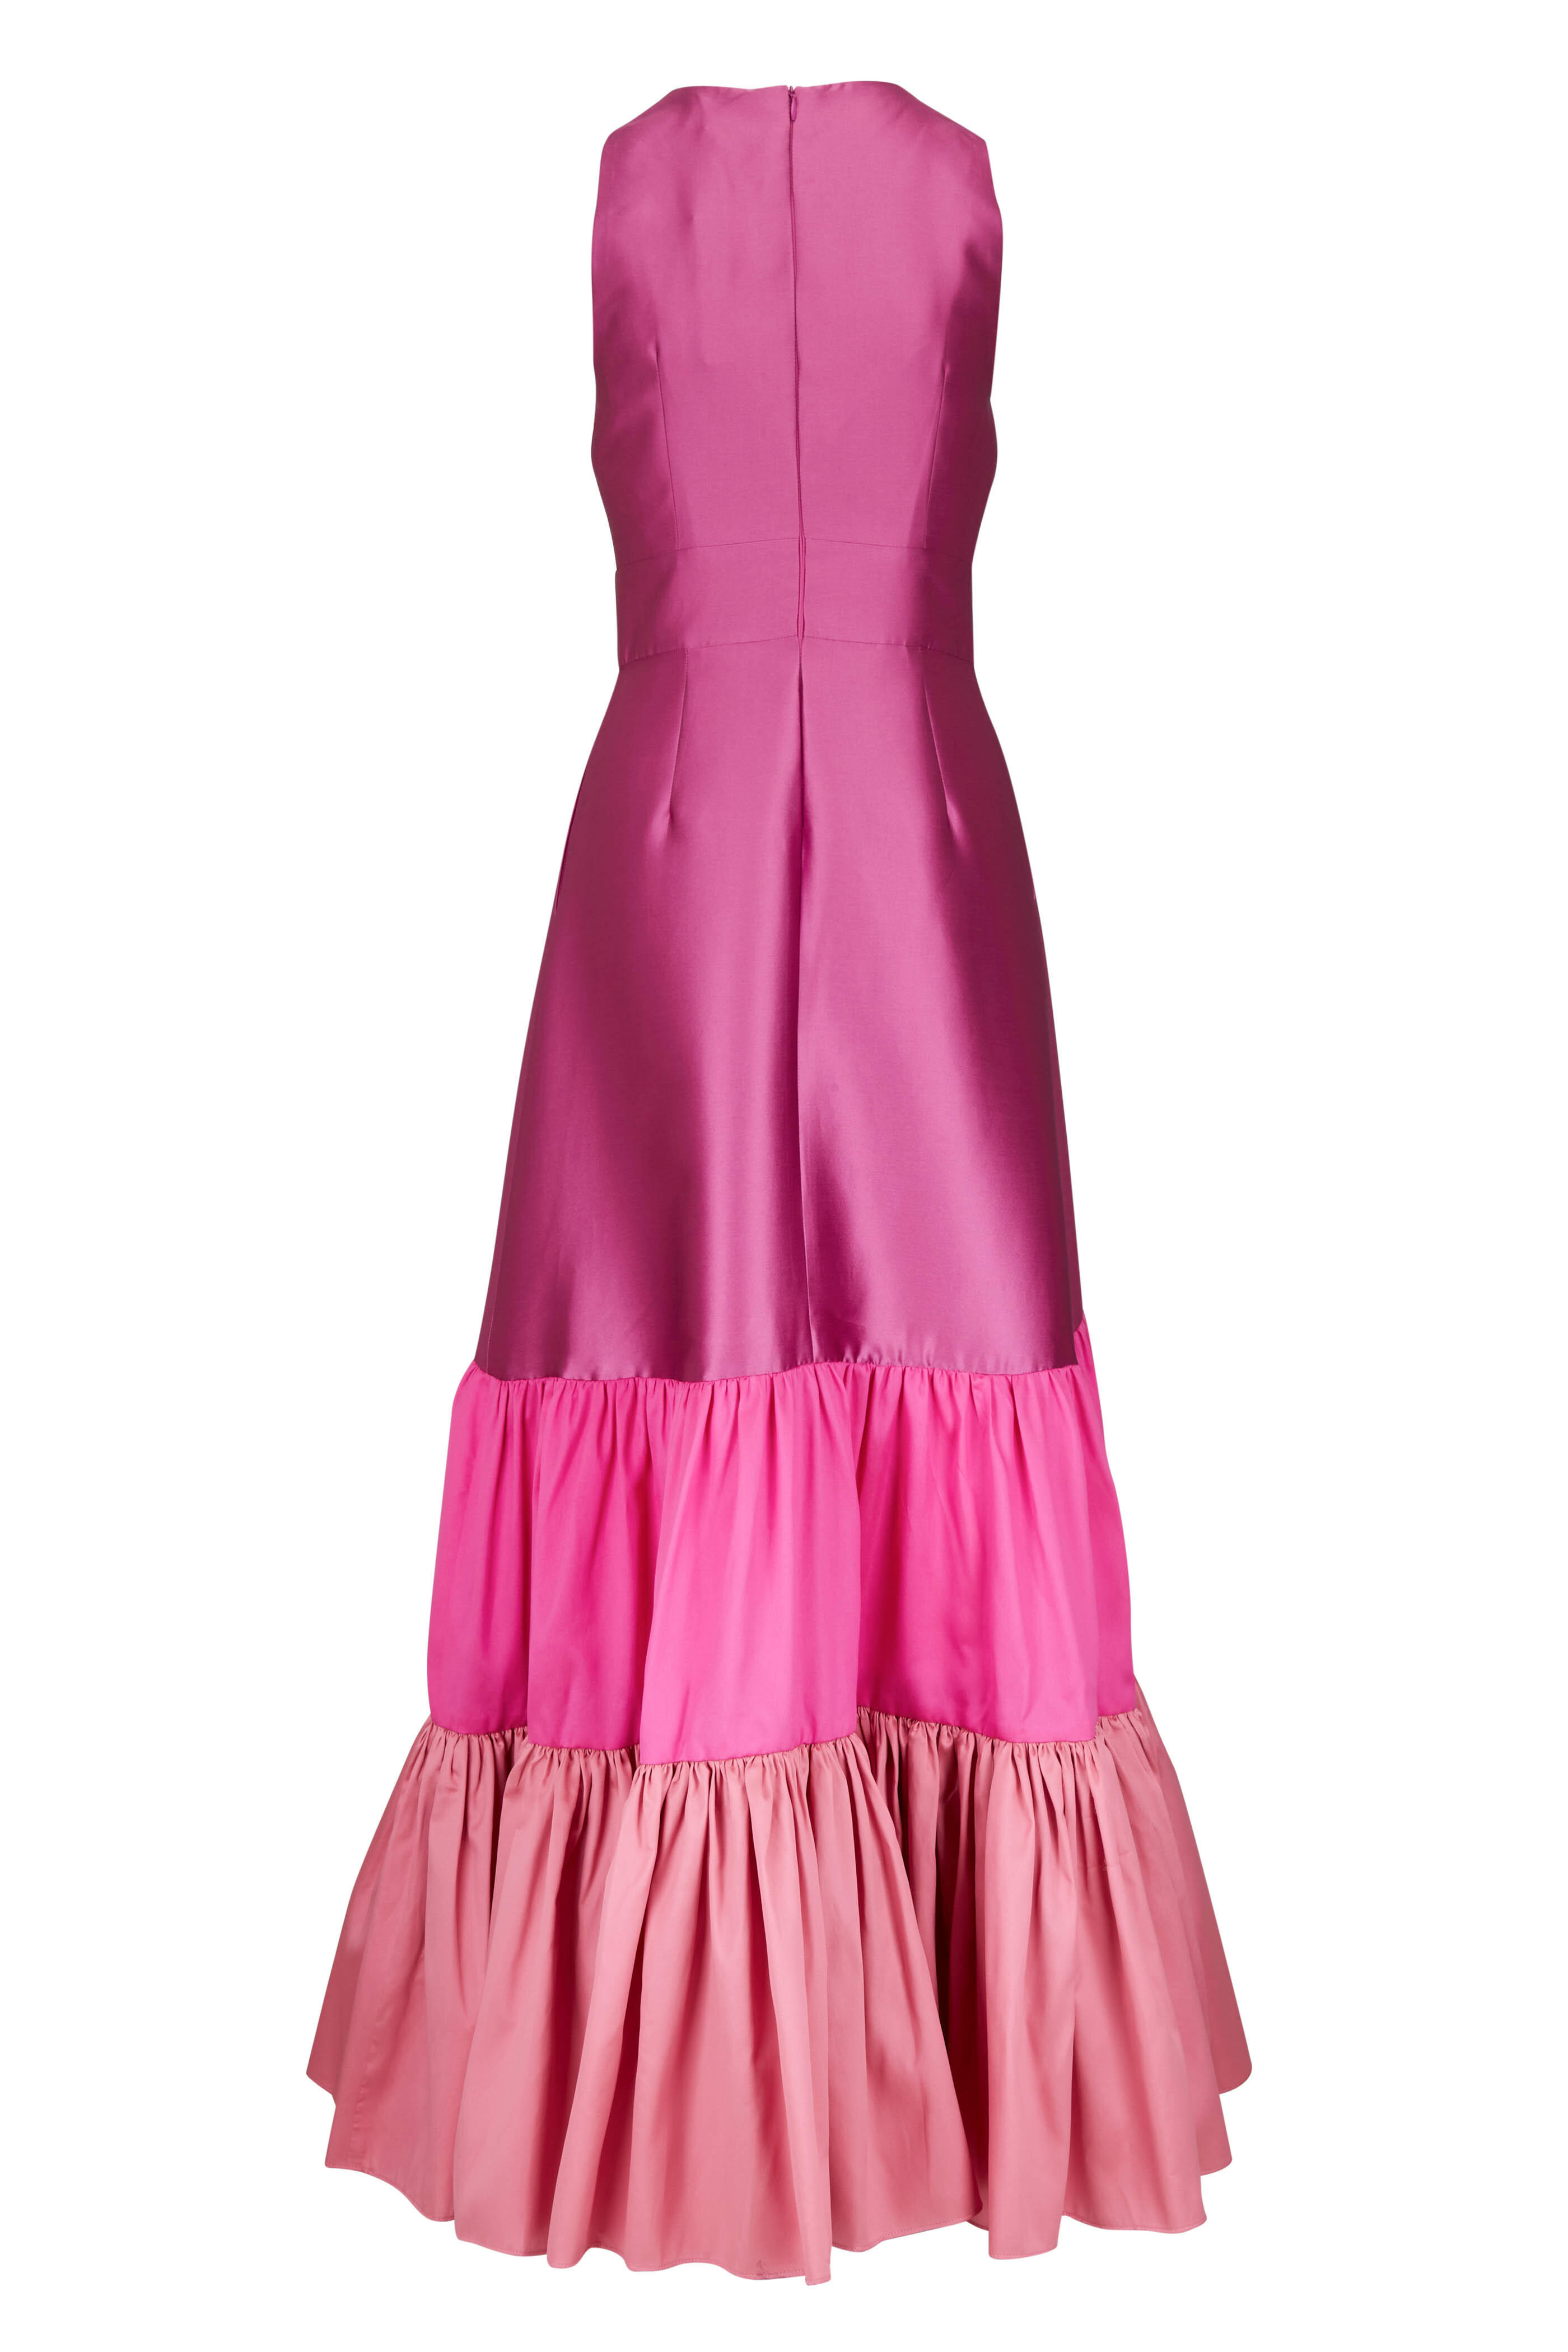 Sachin + Babi - Rori Fuchsia Gown | Mitchell Stores